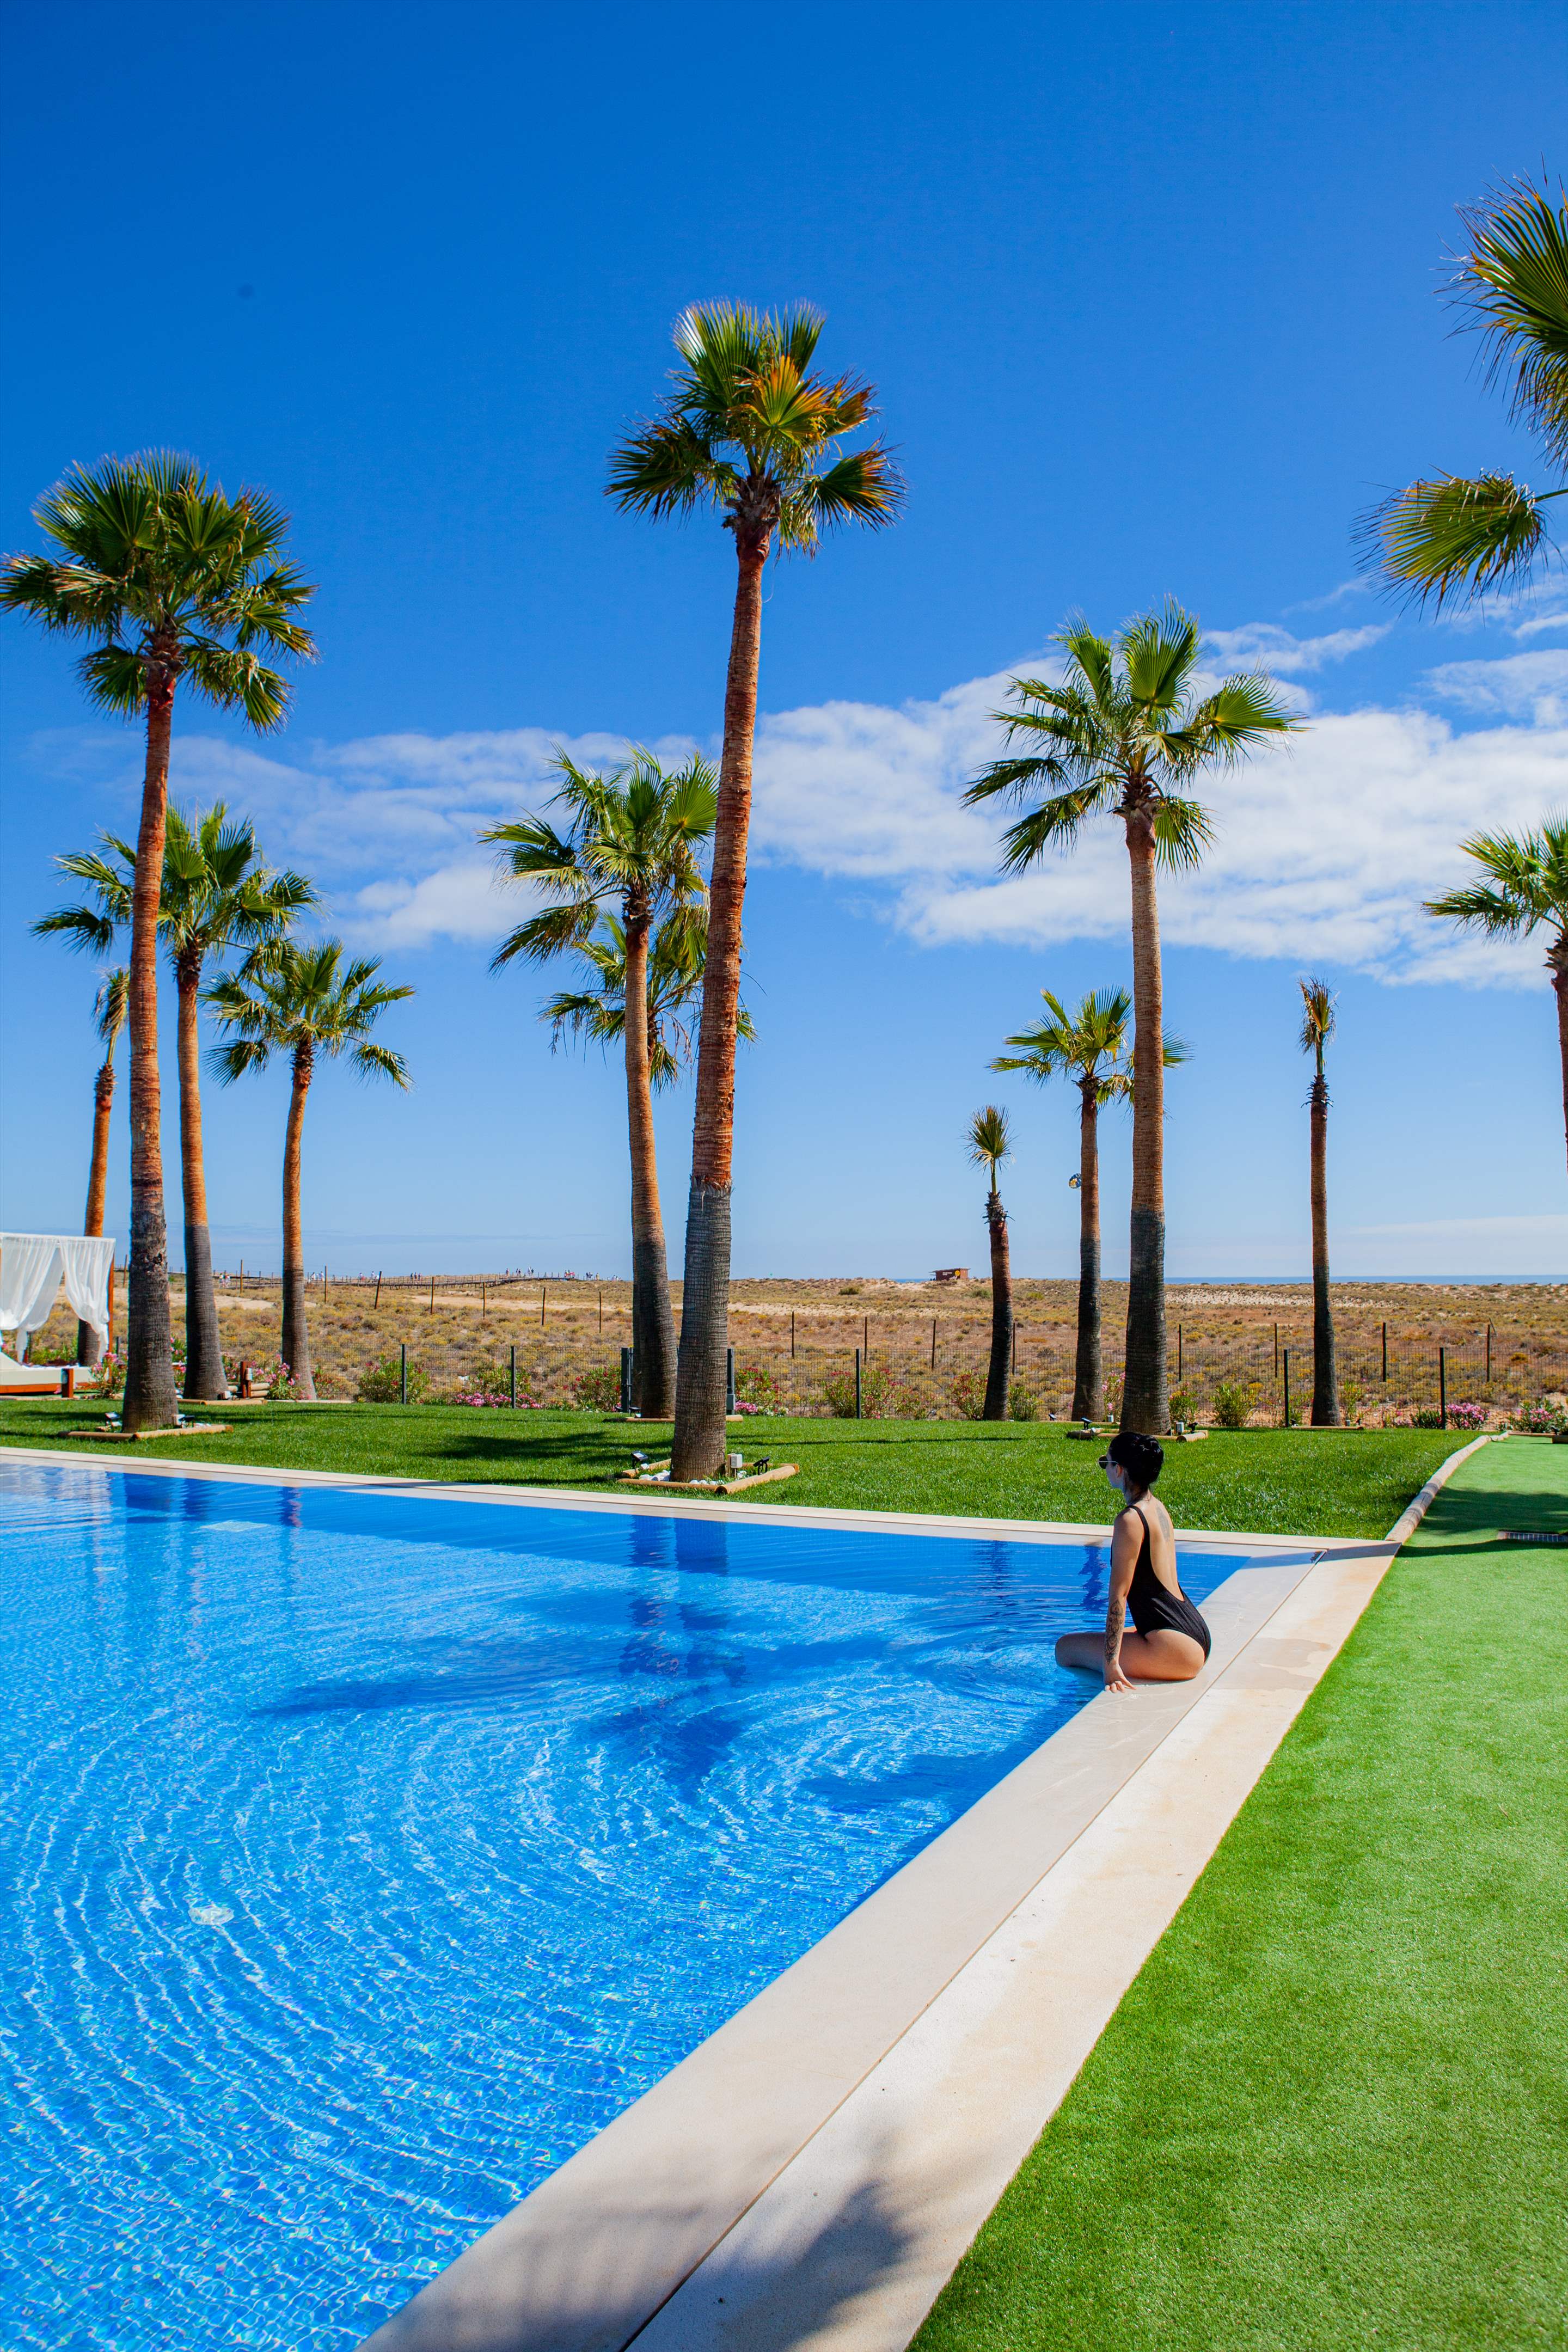 Vidamar Hotel Superior Ocean View Room, HB, Double Room, 1 bedroom hotel in Vidamar Resort, Algarve Photo #51